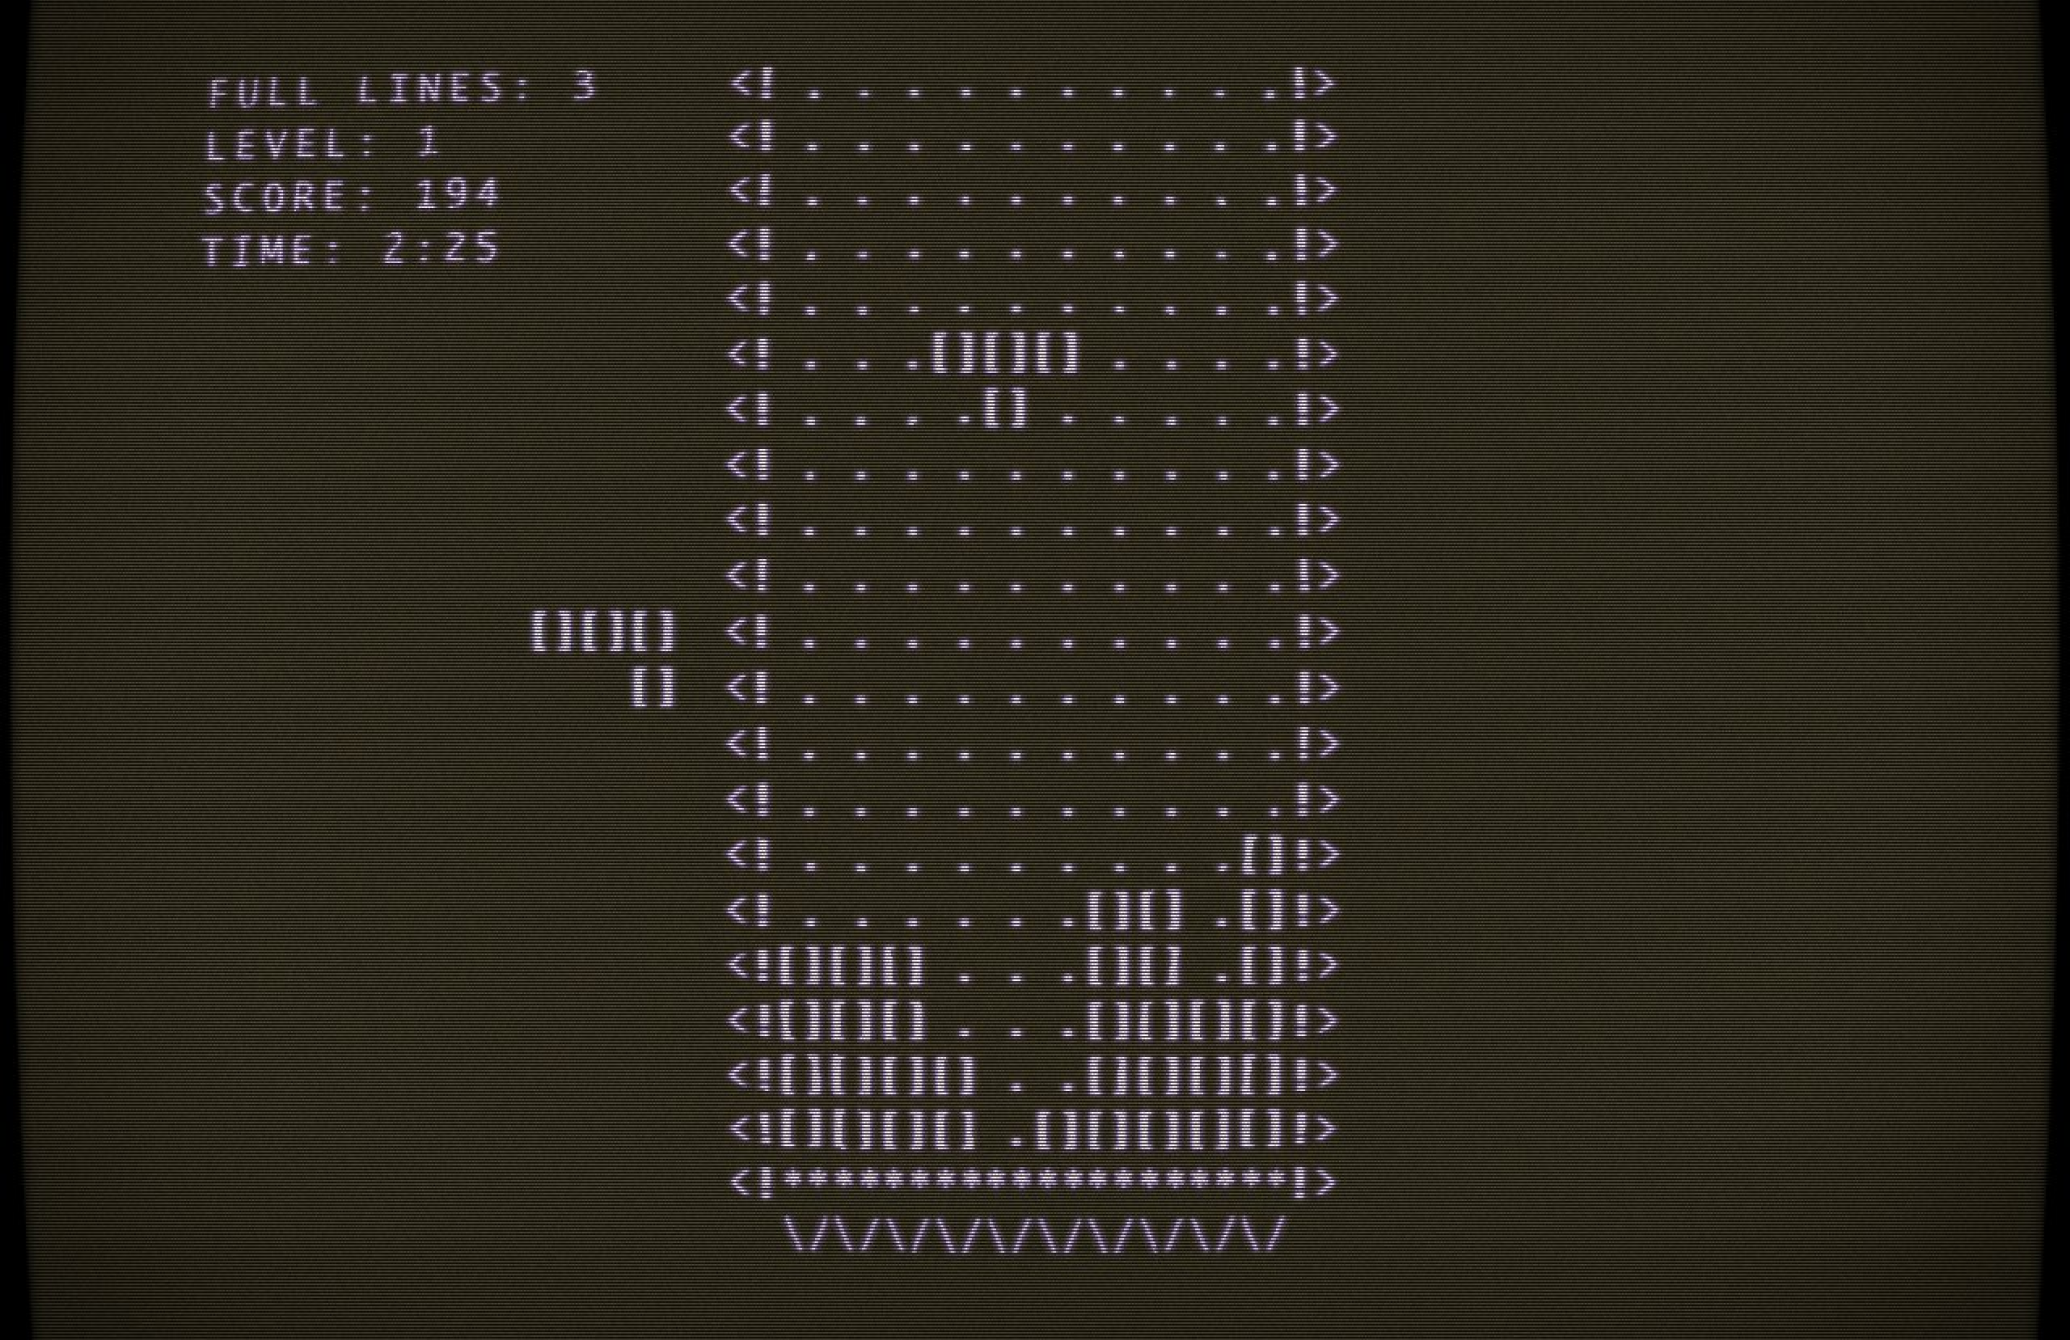 The original Tetris game